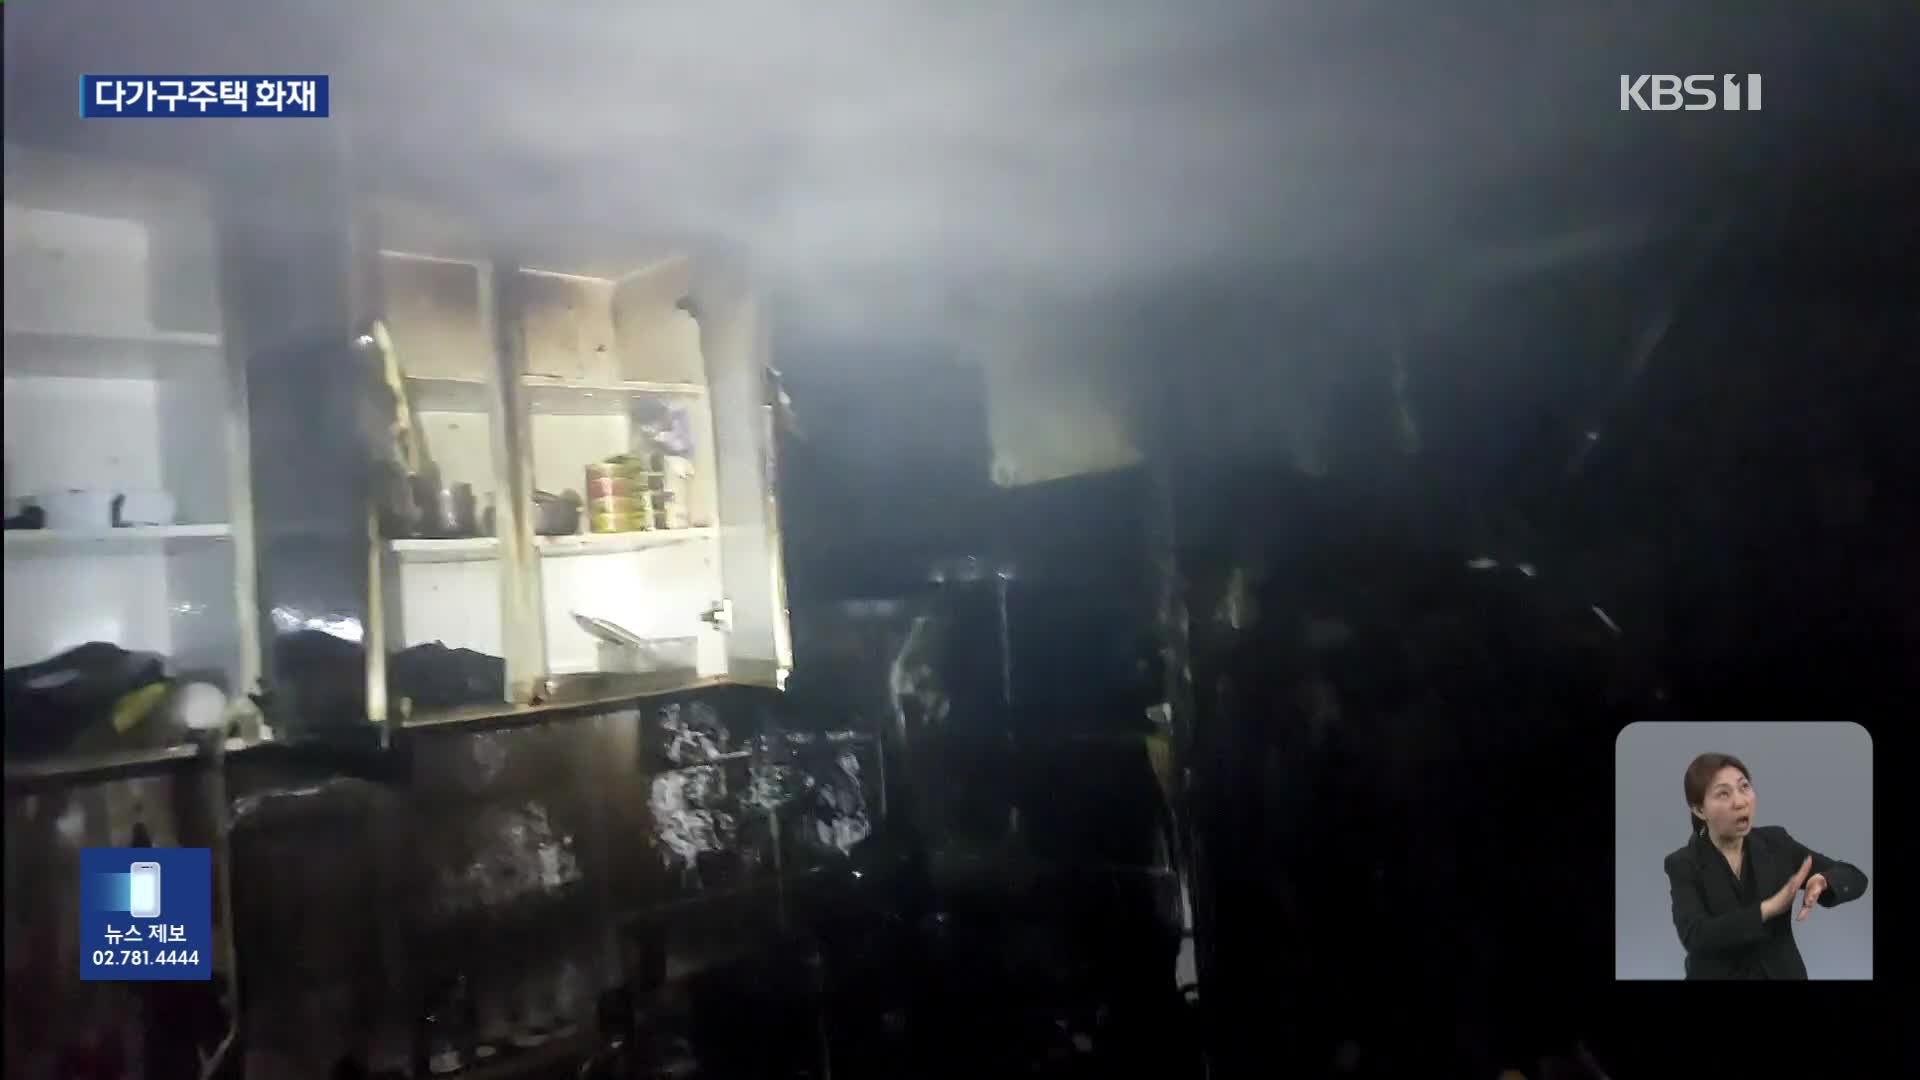 서울 구로구 주택에서 불…밤사이 사건·사고